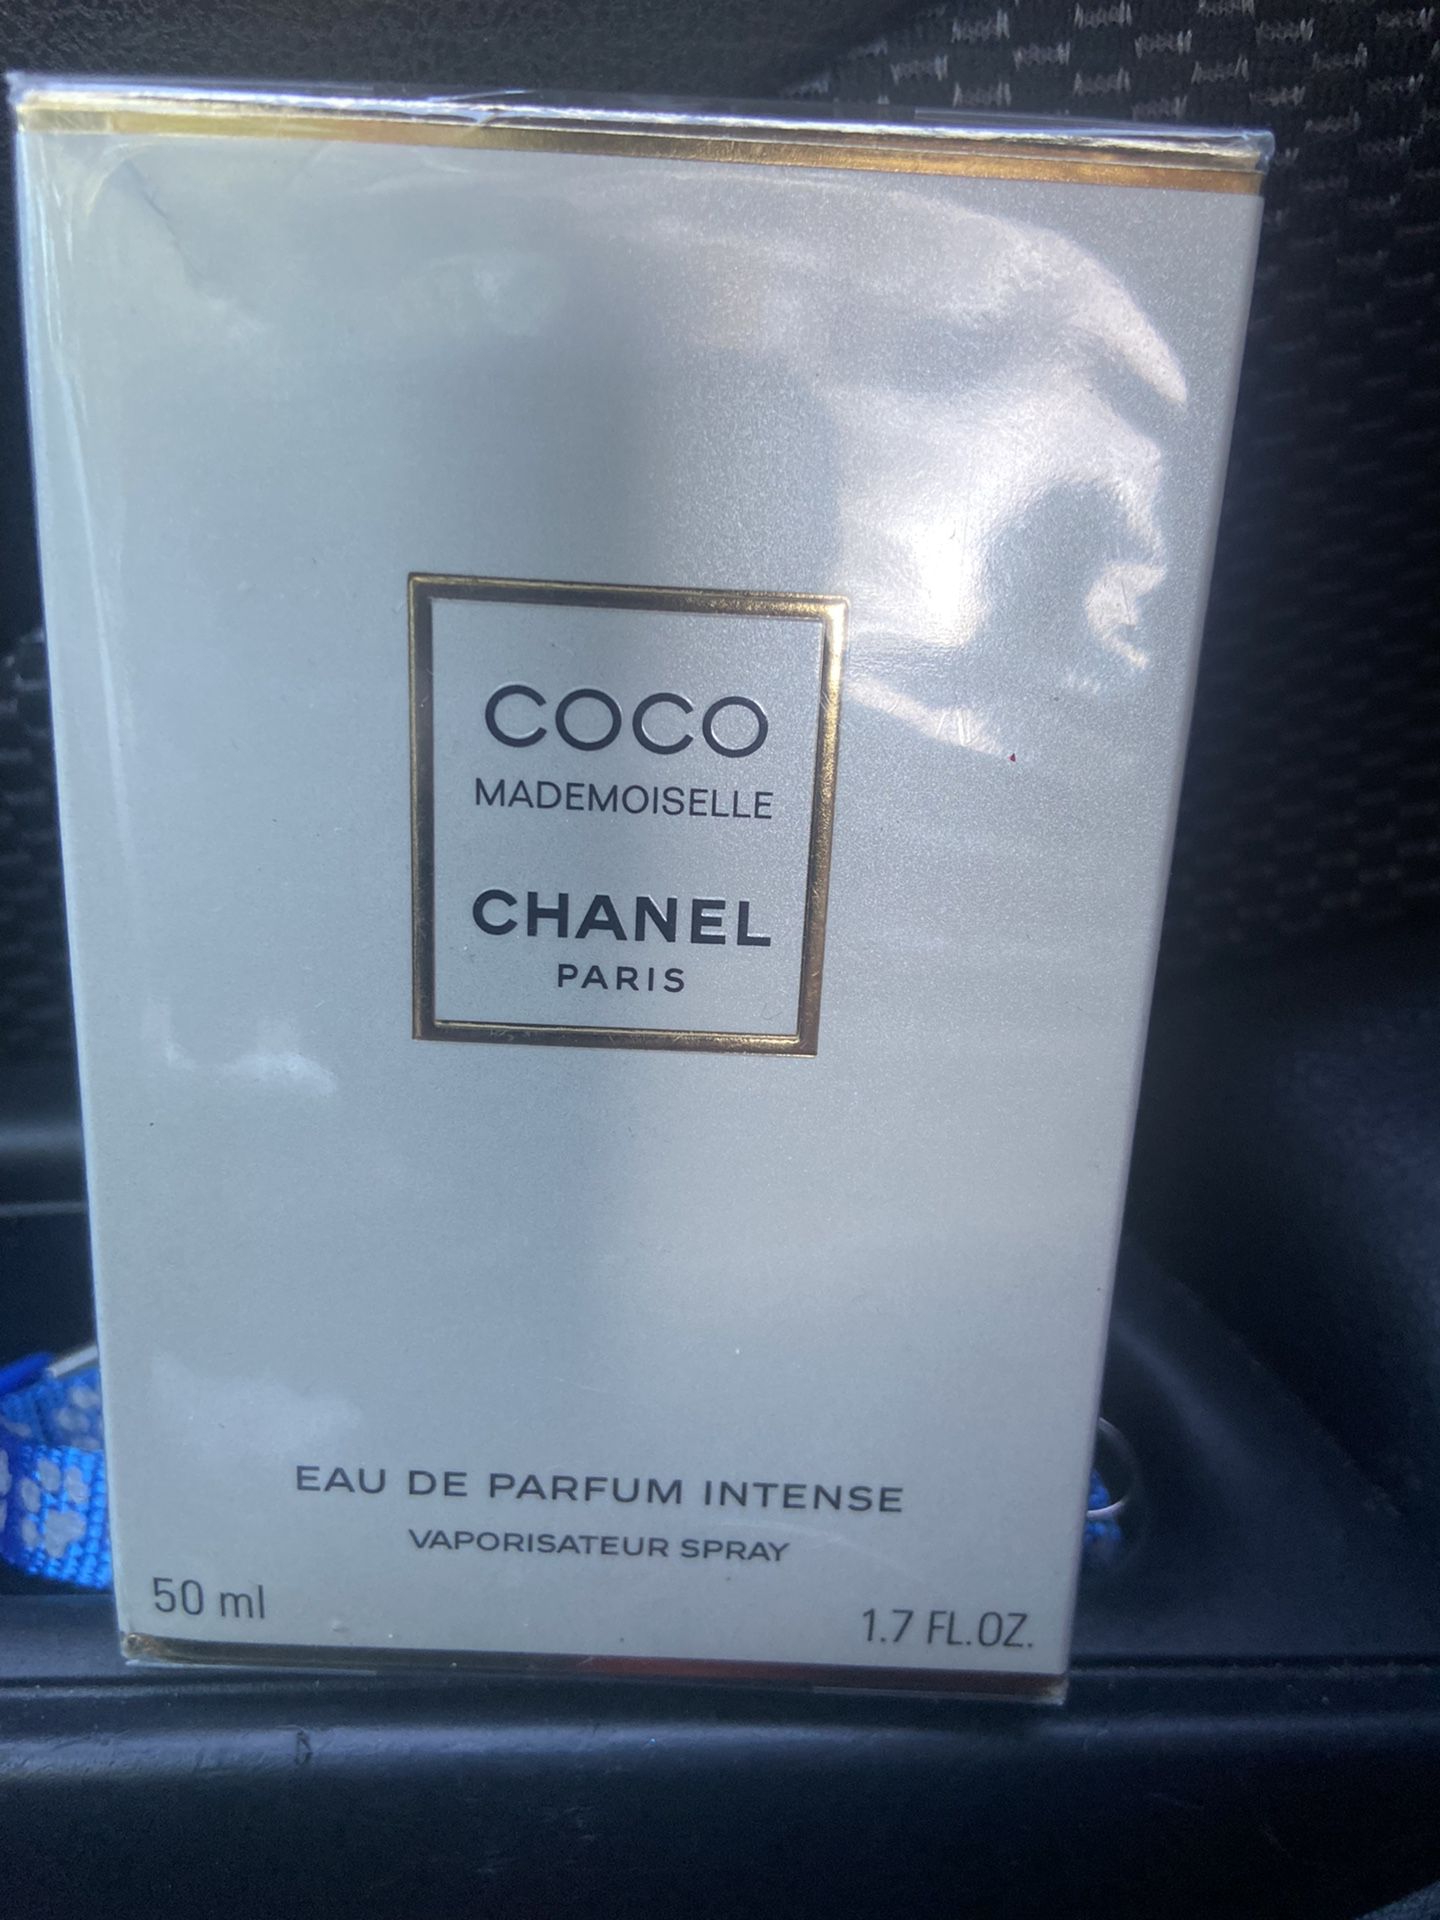 COCO Mademoiselle CHANEL Paris  EAU DE PARFUM  INTENSE Vaporisateur Spray